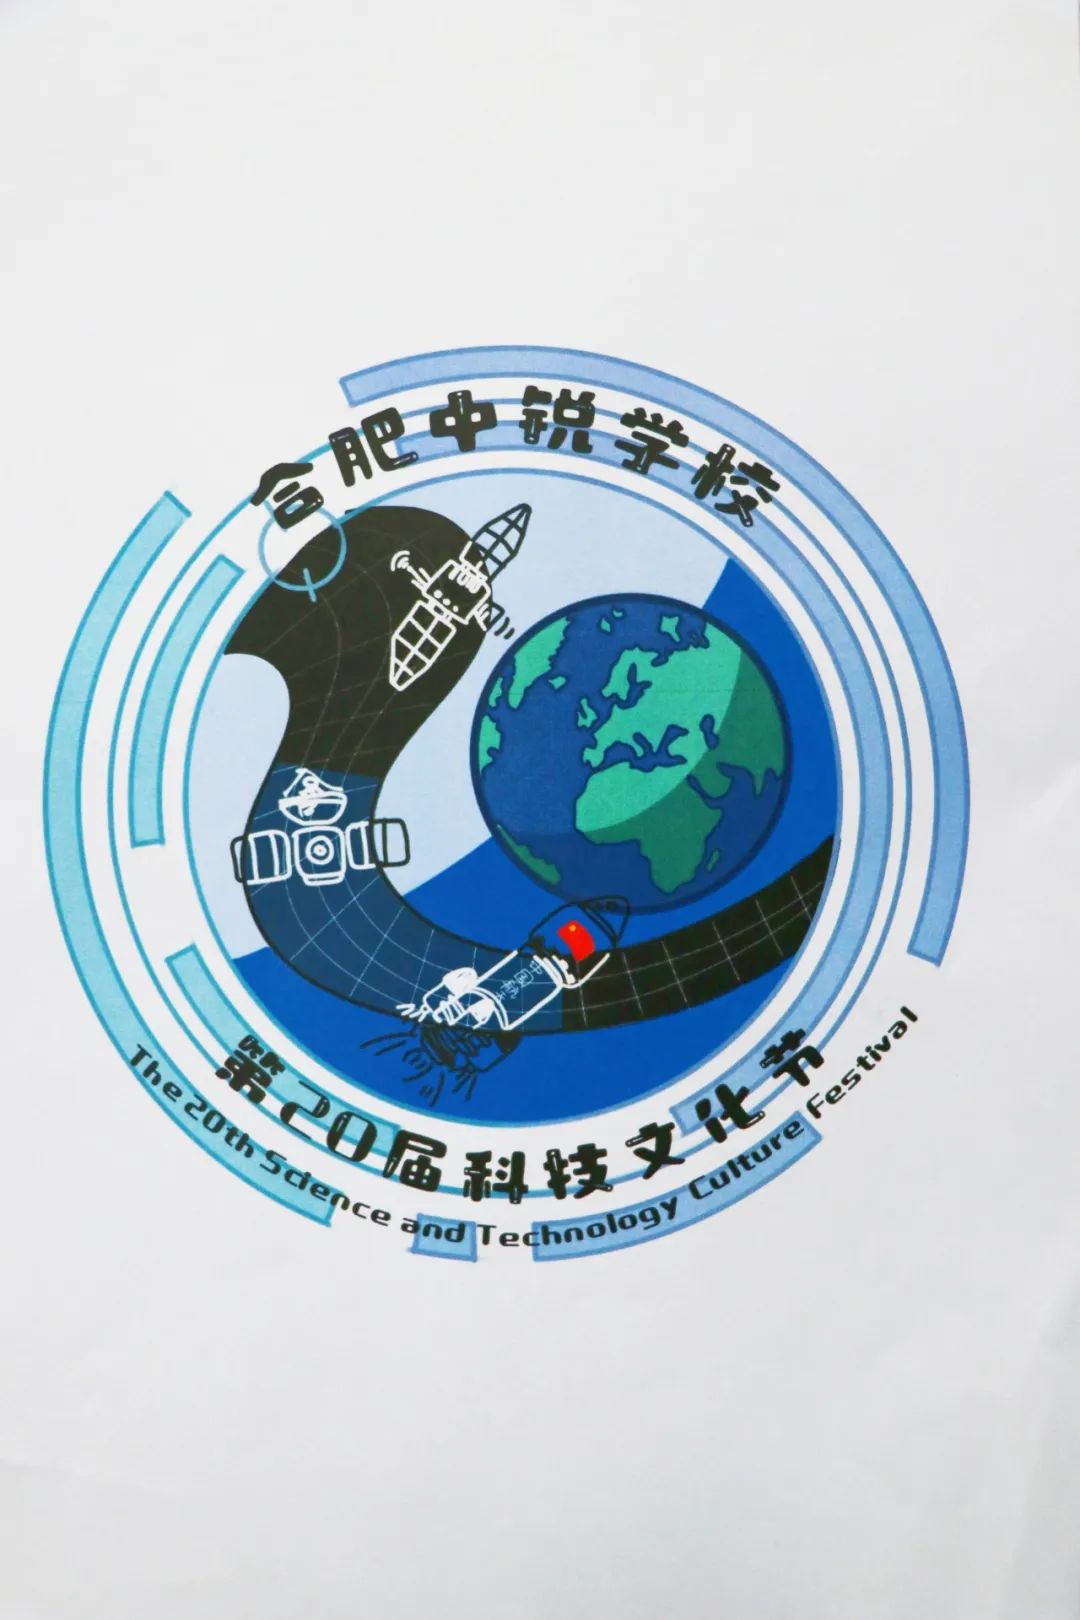 合肥中锐学校第二十届科技文化节会徽正式揭晓！